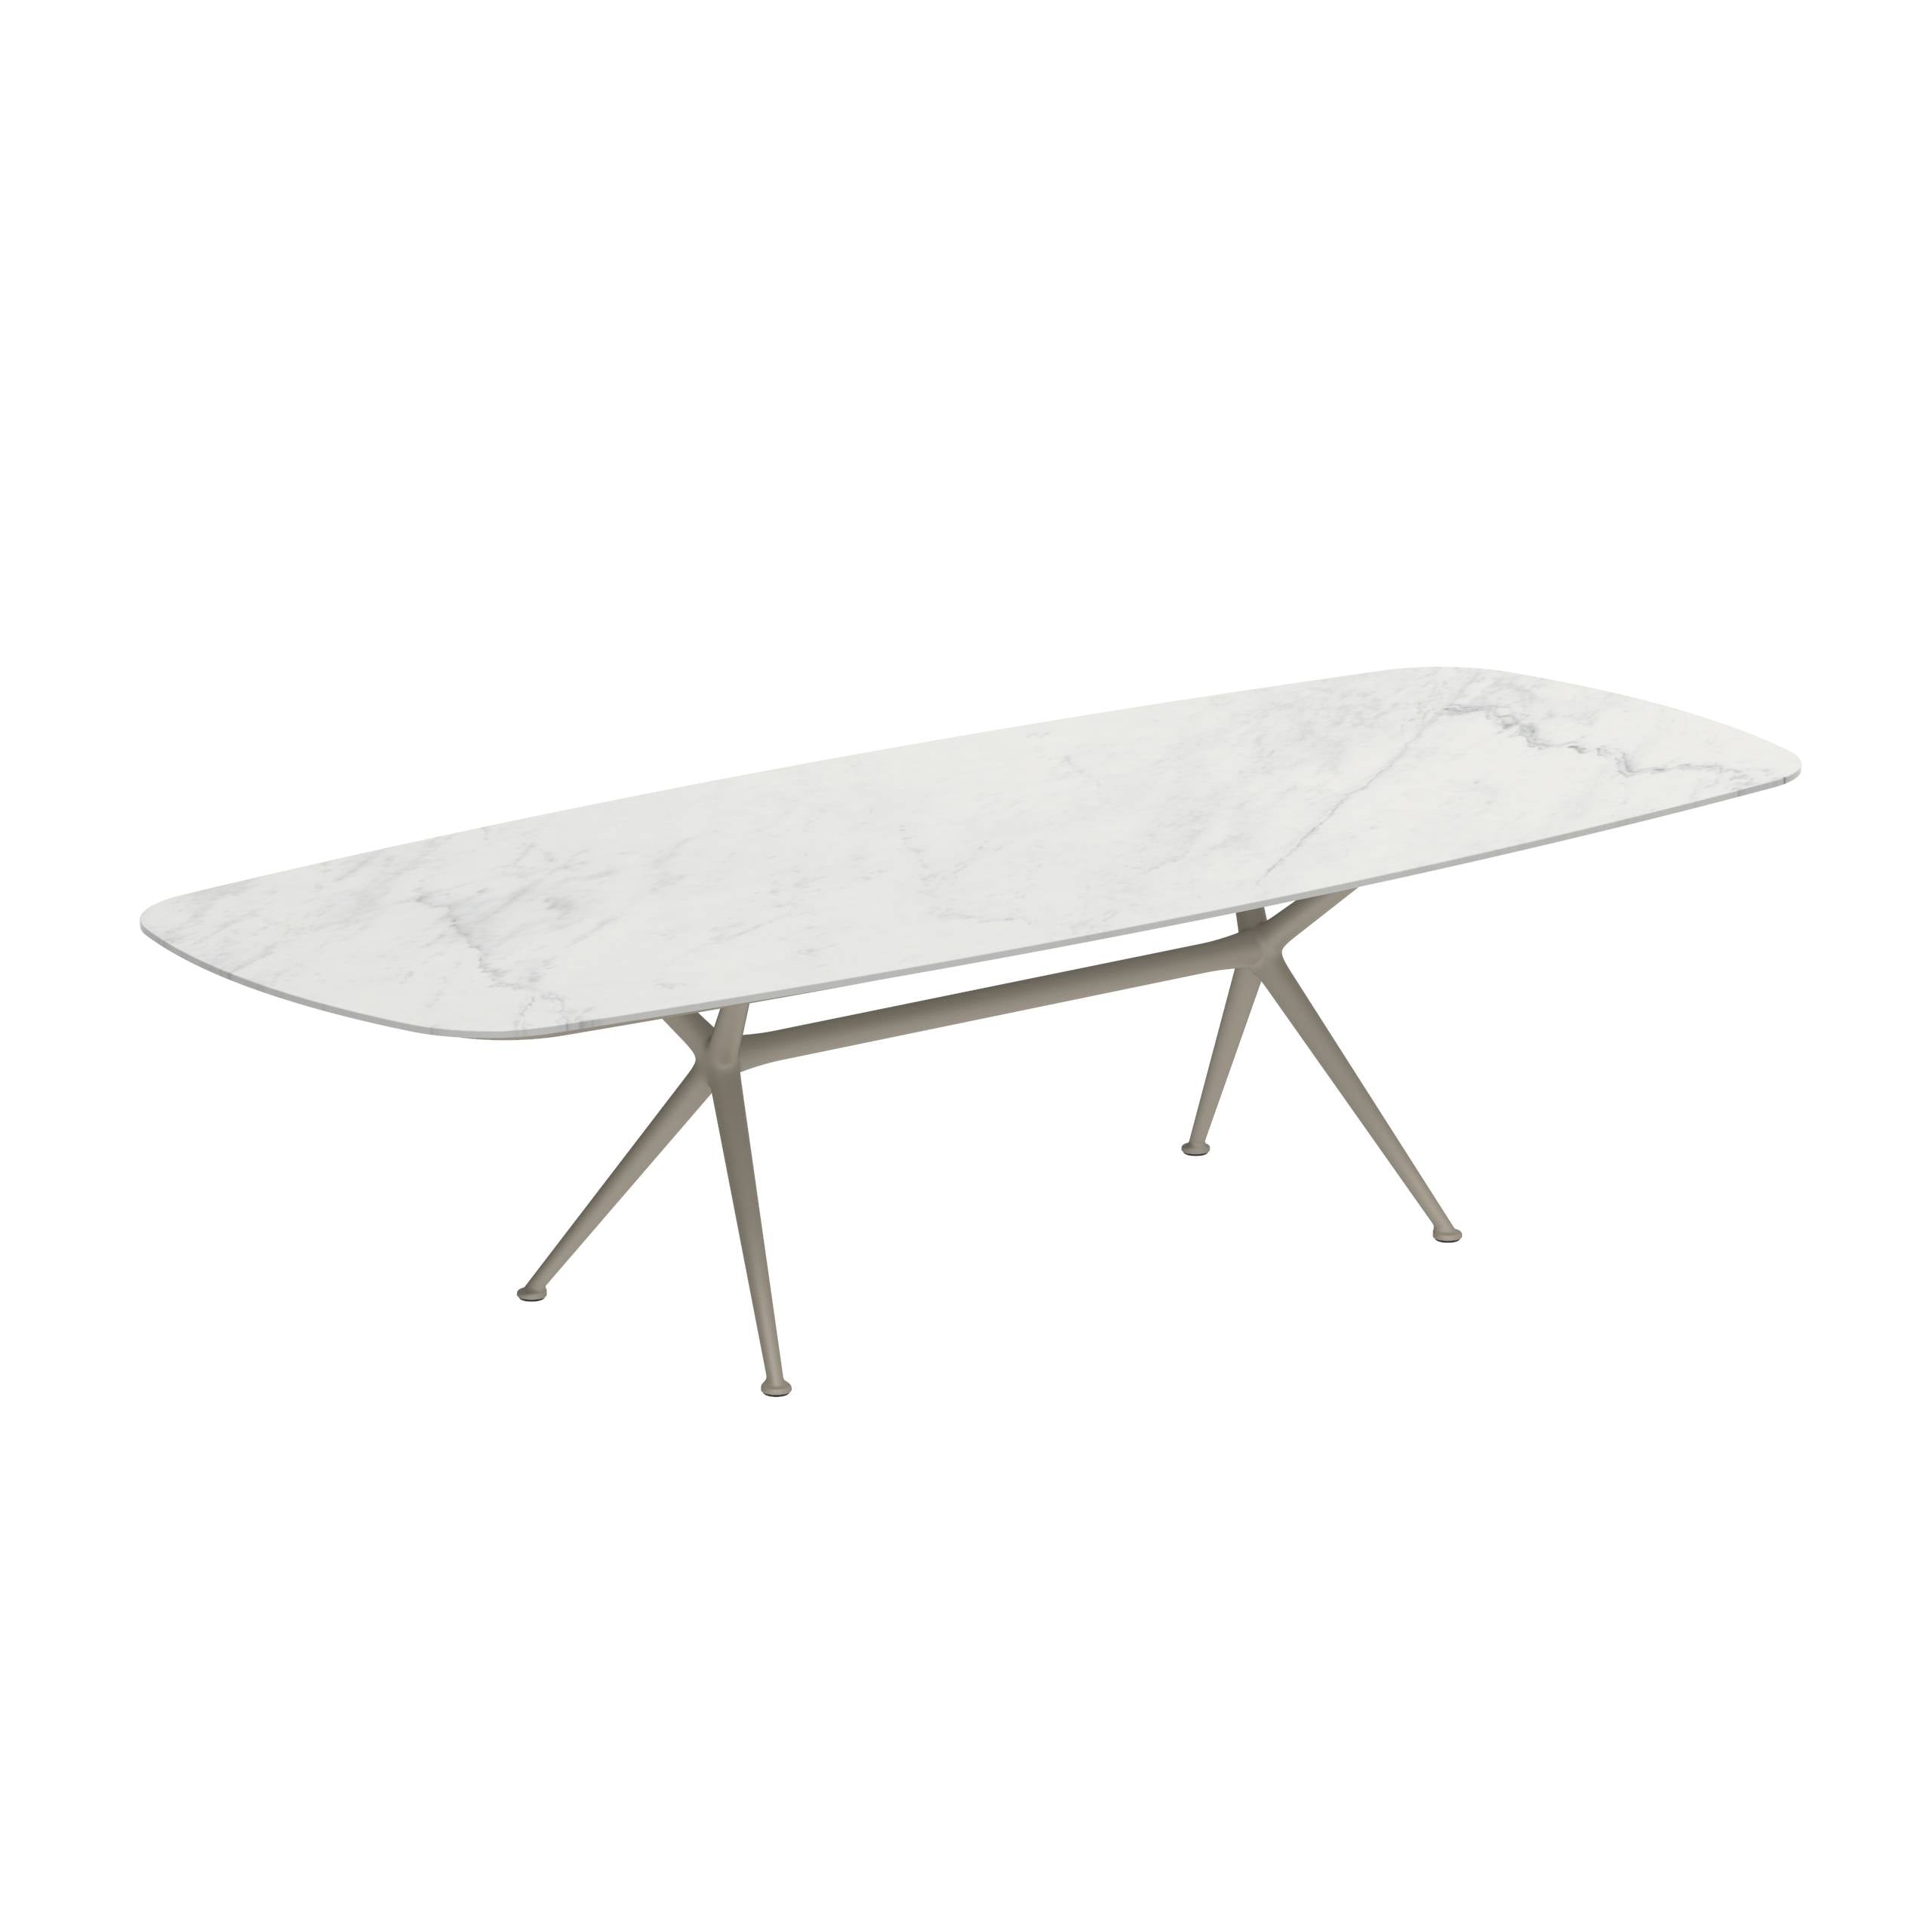 Exes Table 300x120cm Alu Legs Sand - Table Top Ceramic Bianco Statuario